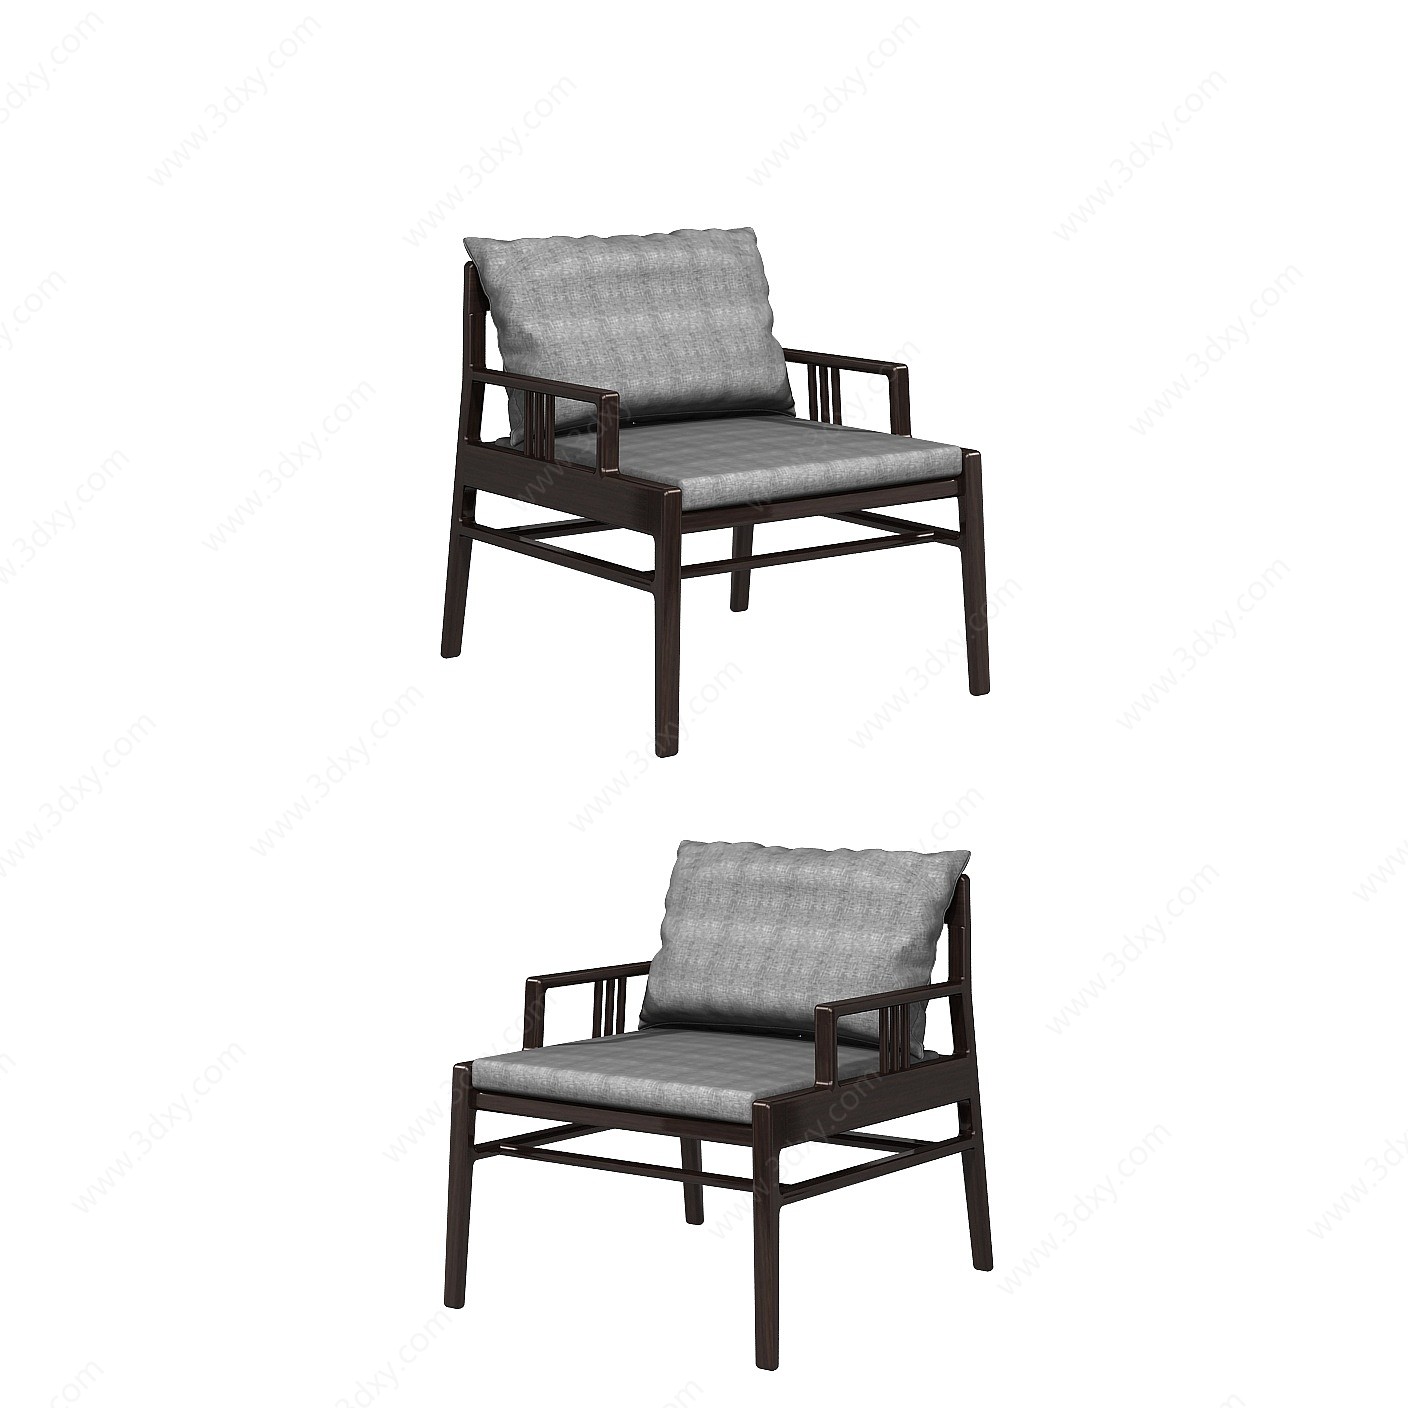 新中式单人休闲椅子3D模型